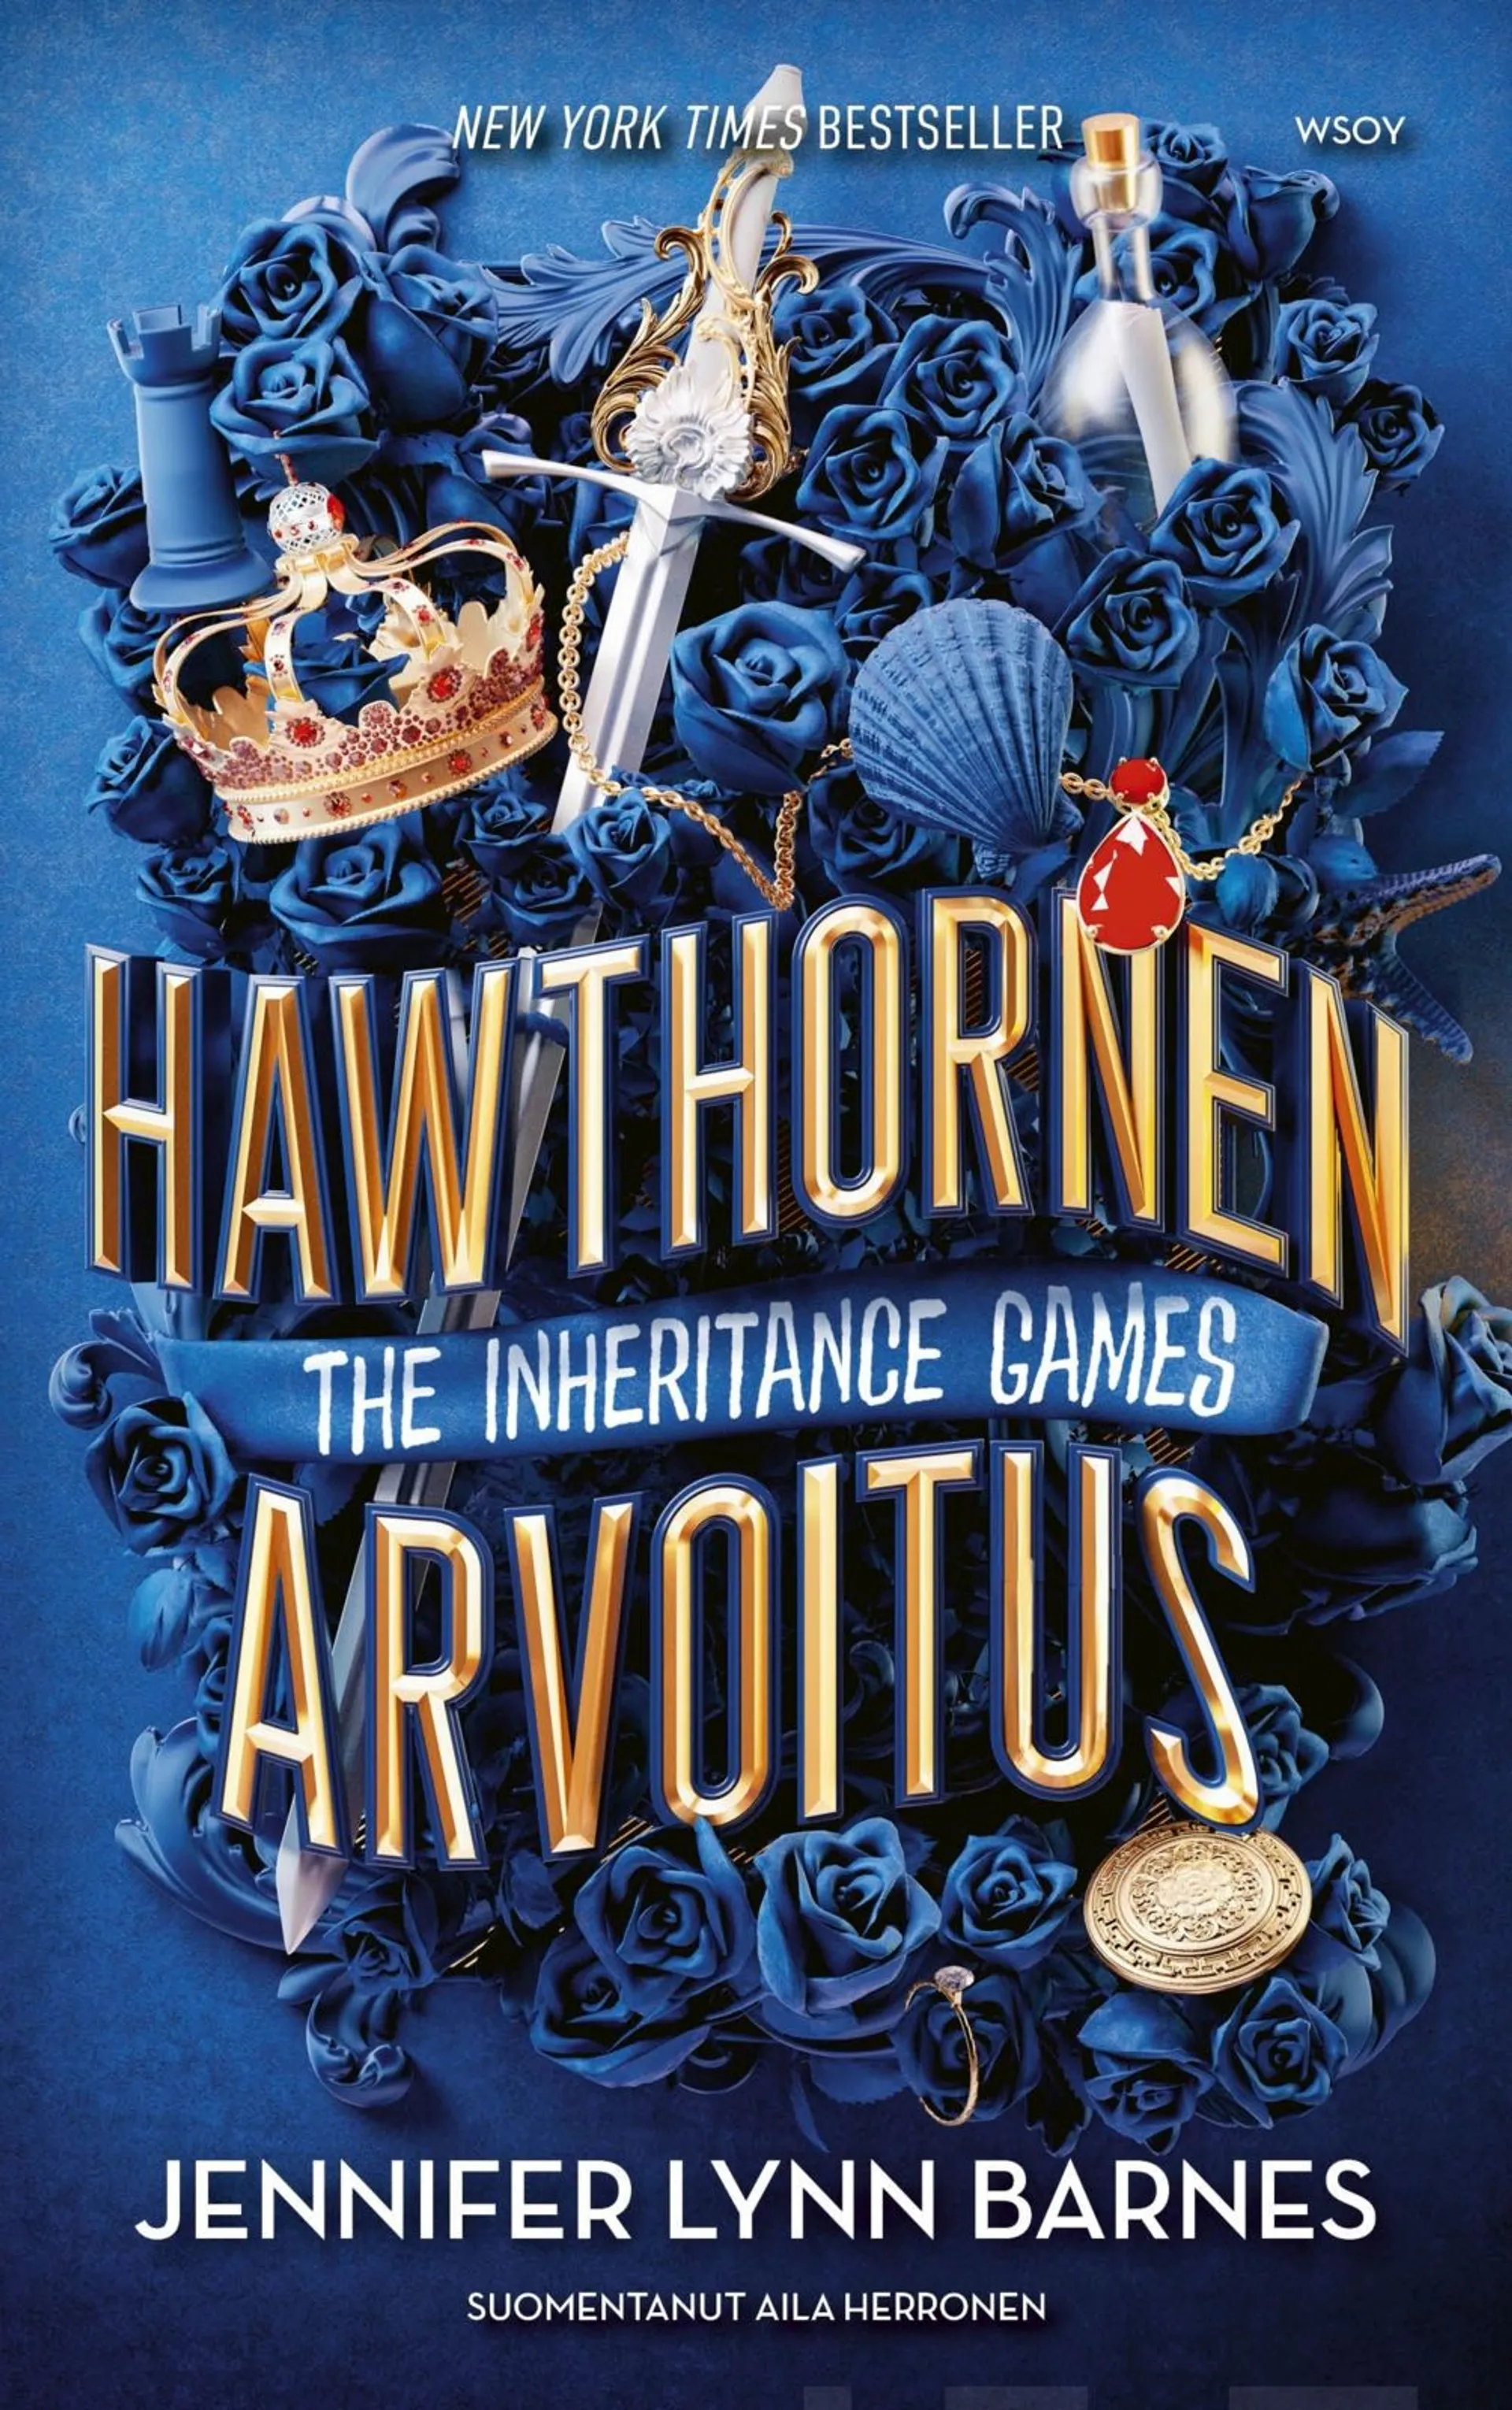 Barnes, The Inheritance Games: Hawthornen arvoitus